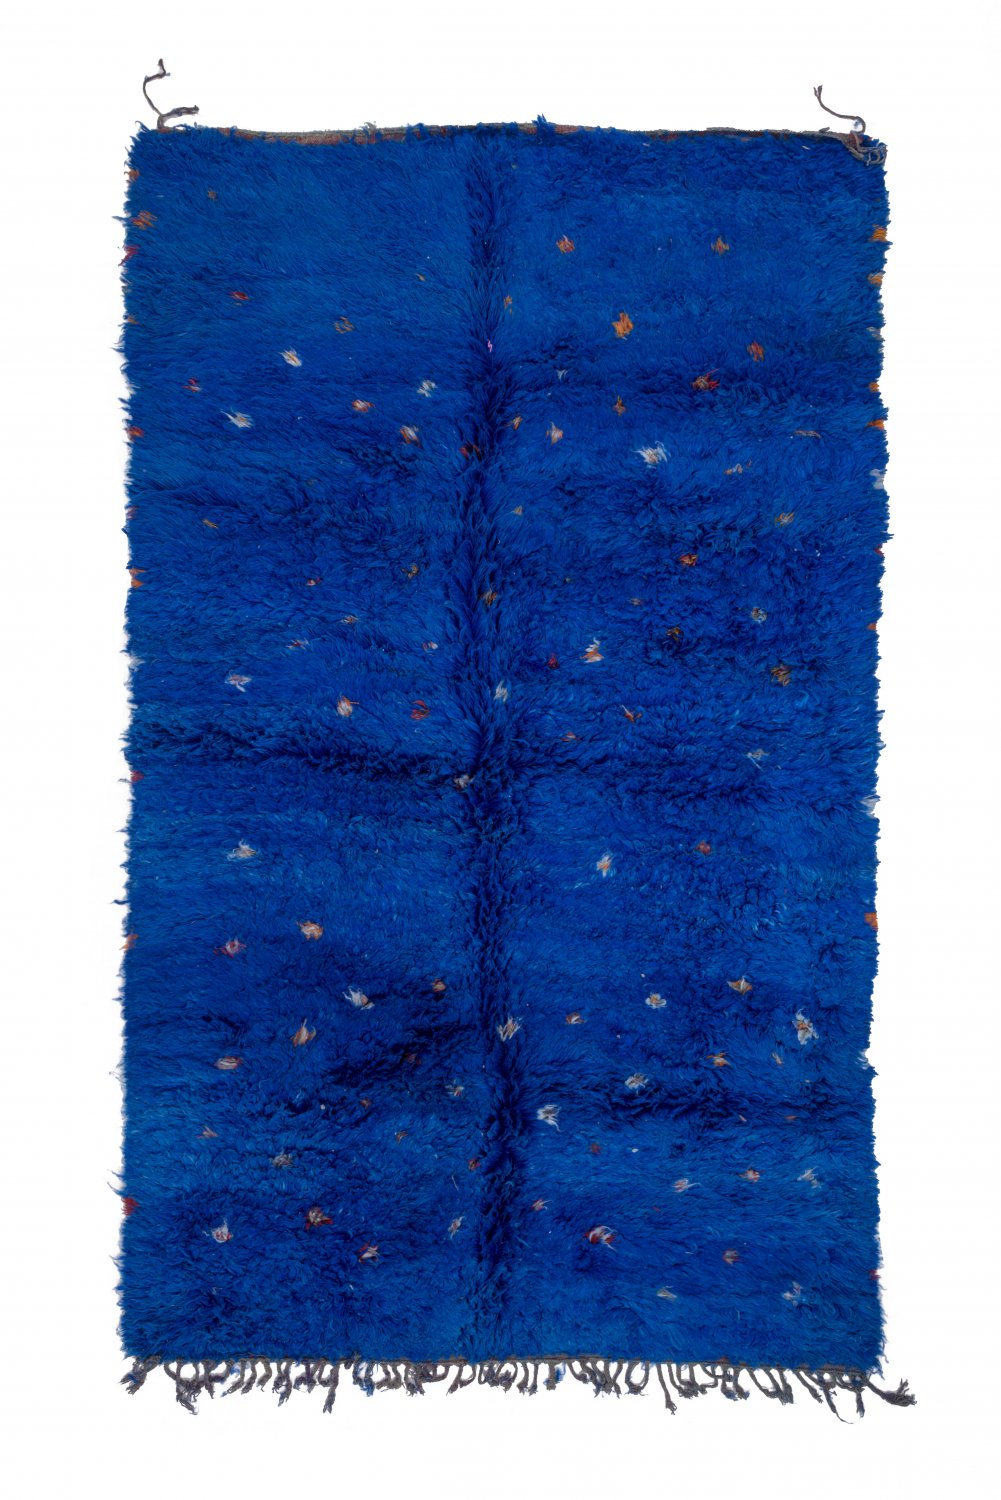 Marokkolainen Kilim matto Azilal 315 x 190 cm